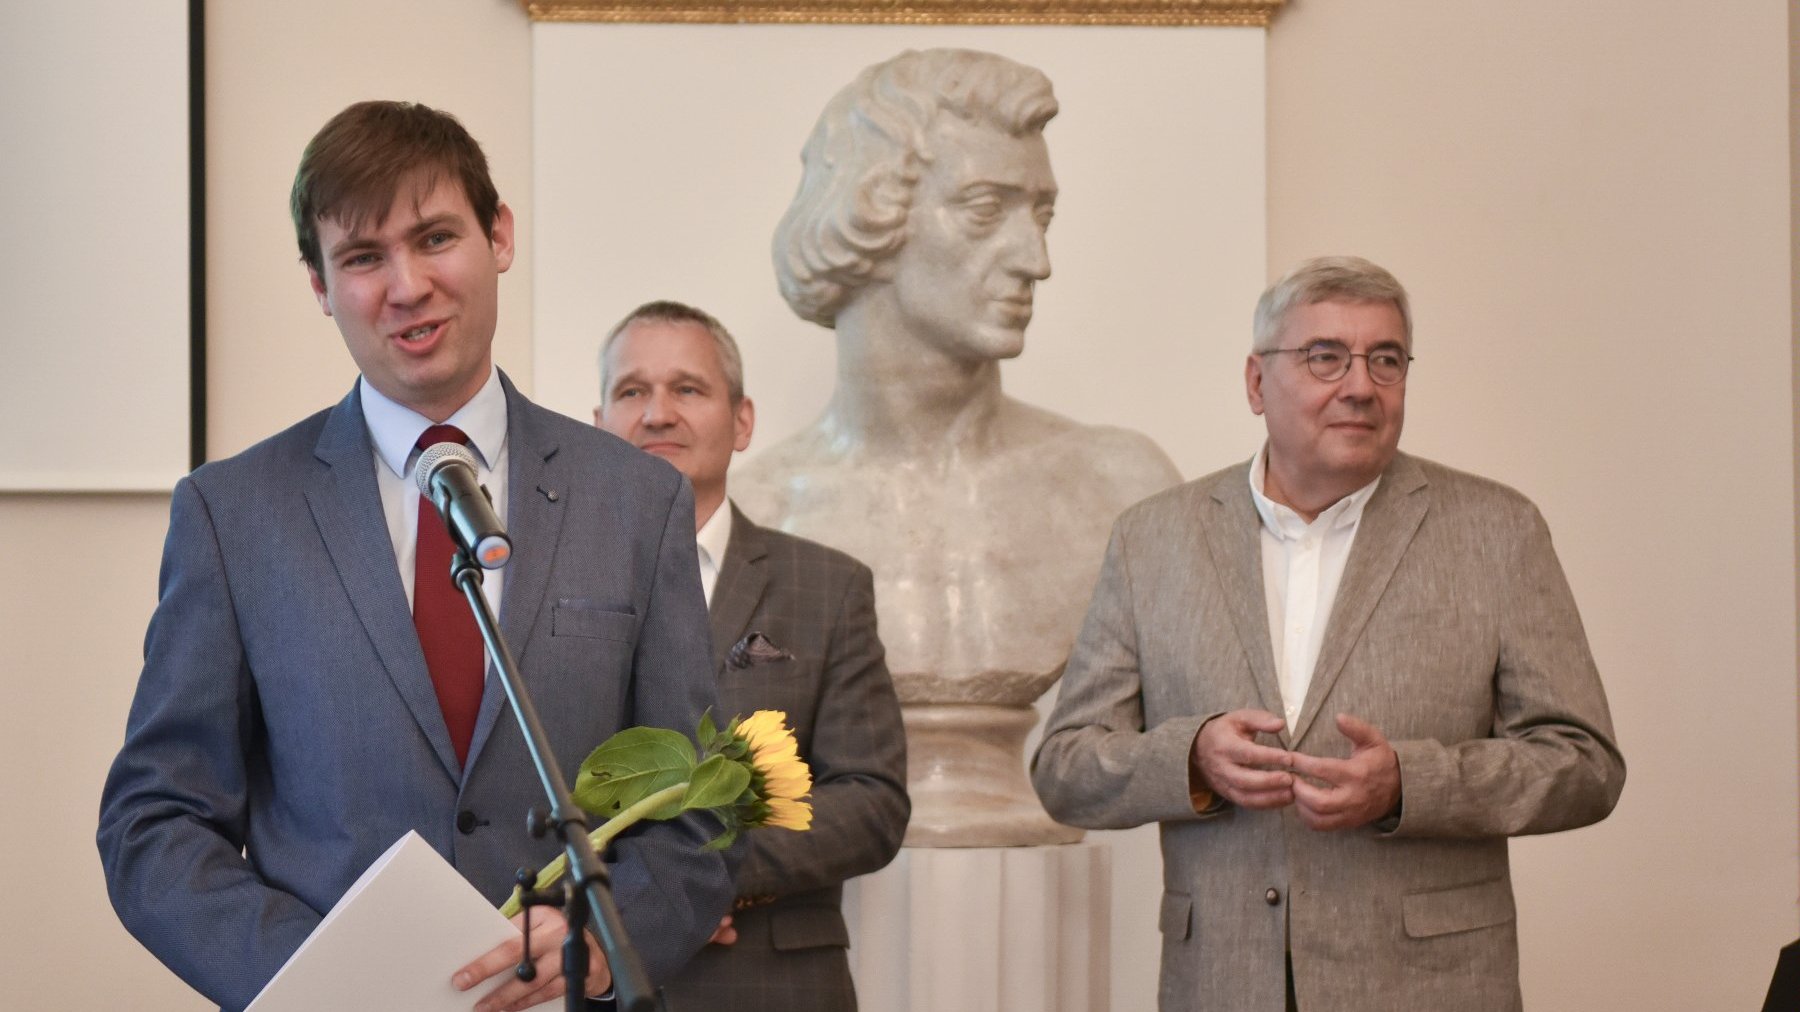 Na zdjęciu młody mężczyzna mówiący coś do mikrofonu, za ni9m dwóch innych mężczyzn